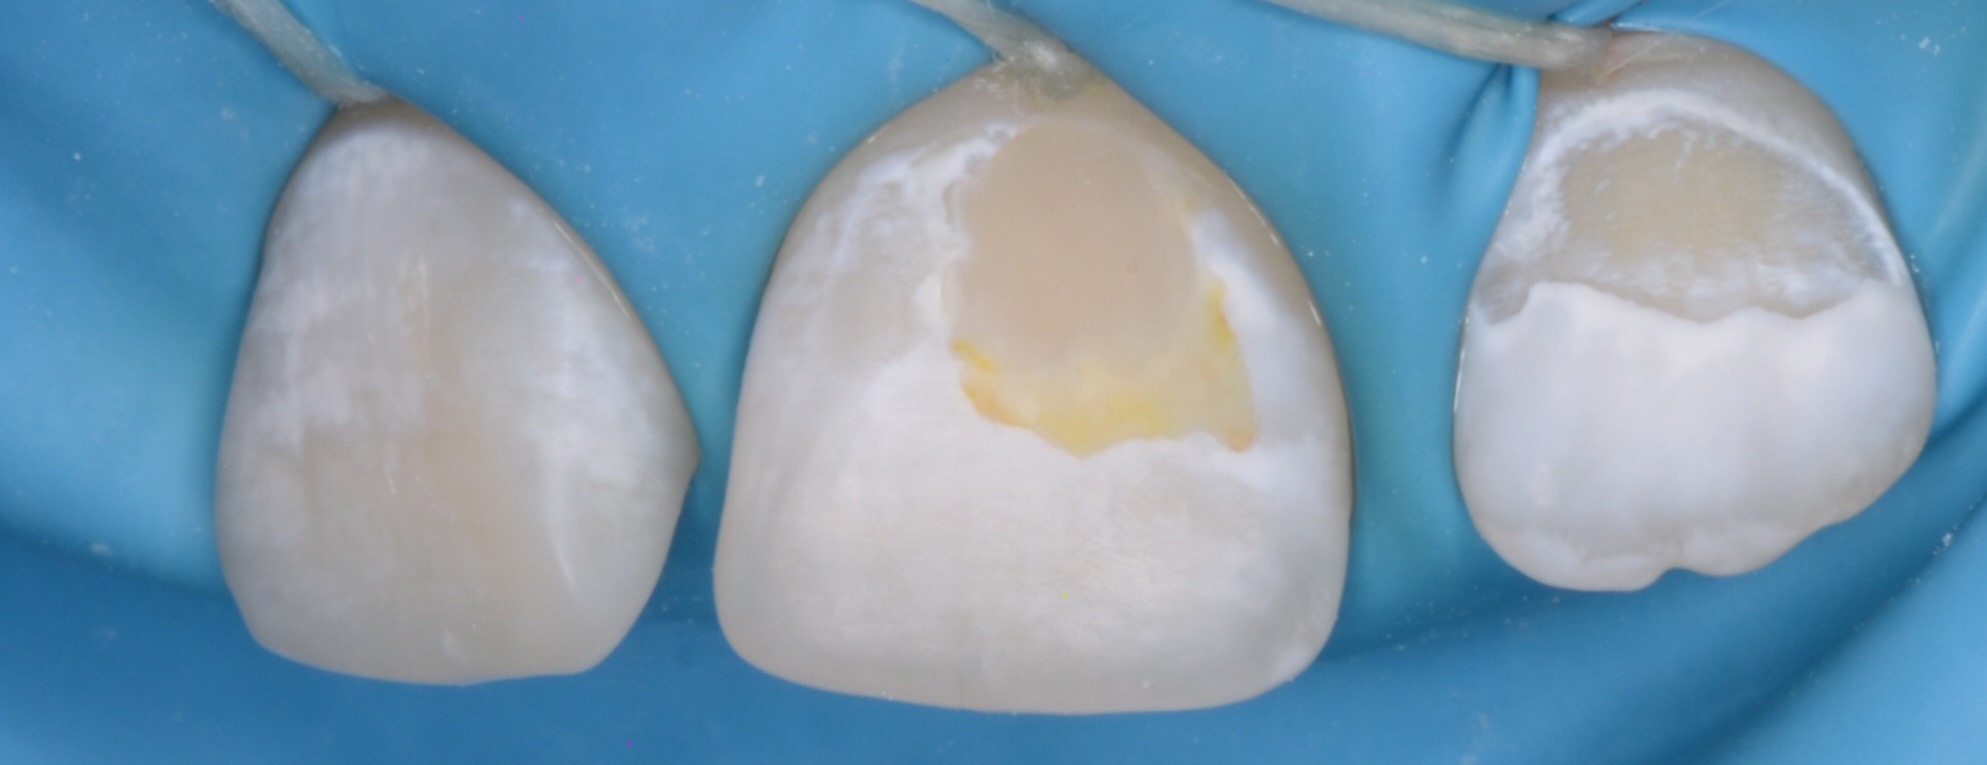 Гипоплазия эмали: почему разрушаются зубы ребенка